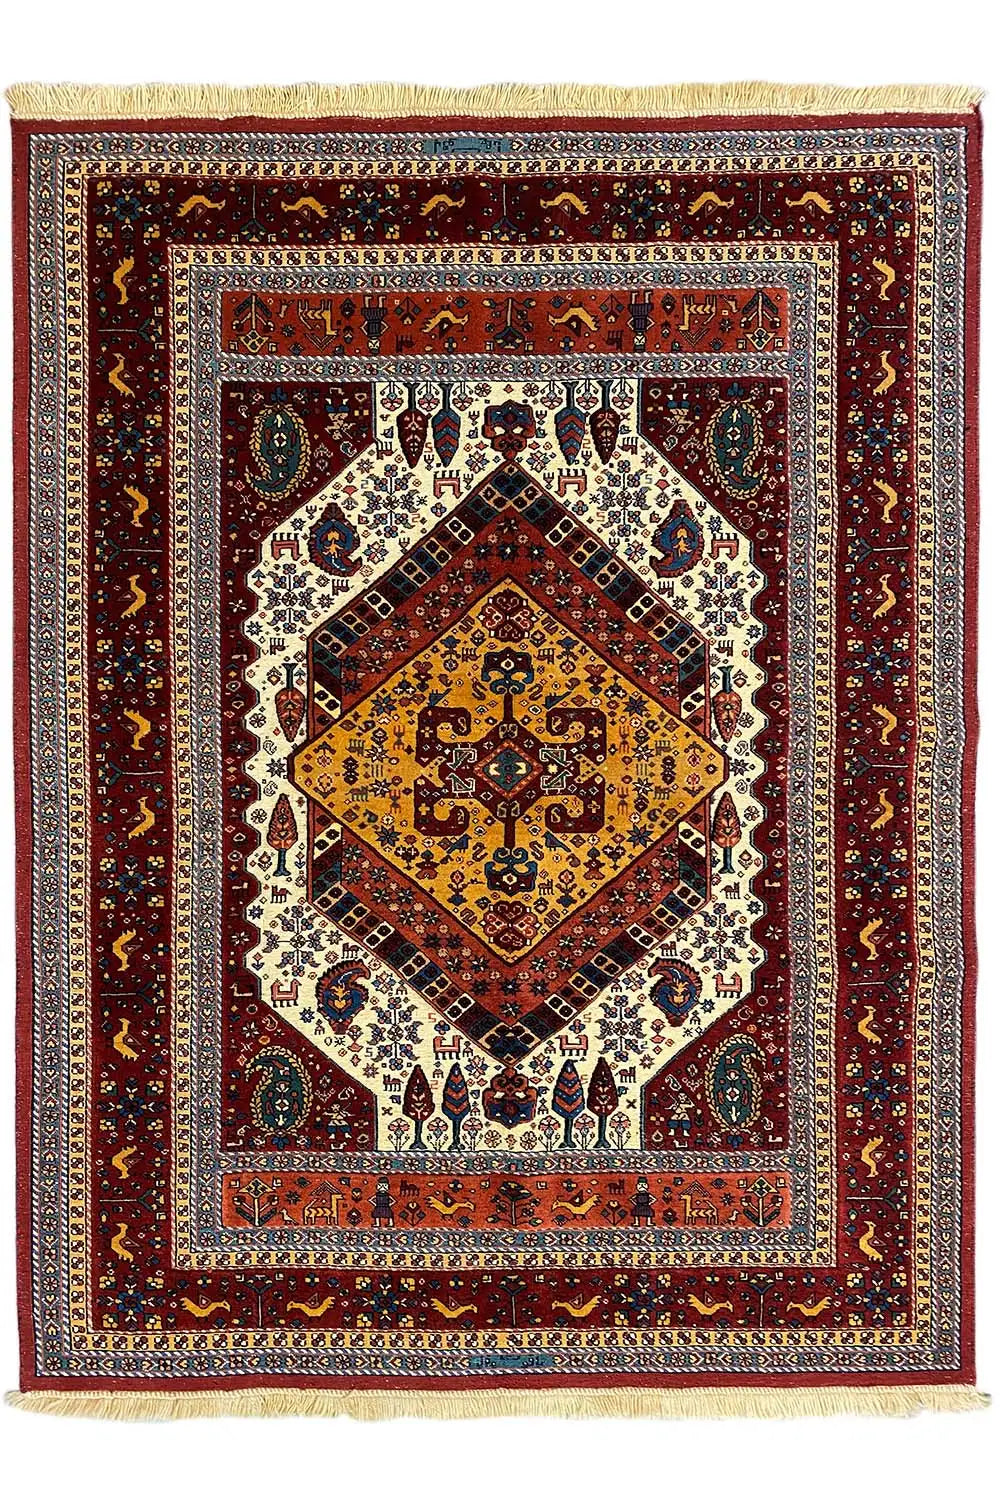 Soumakh (176x134cm) - German Carpet Shop